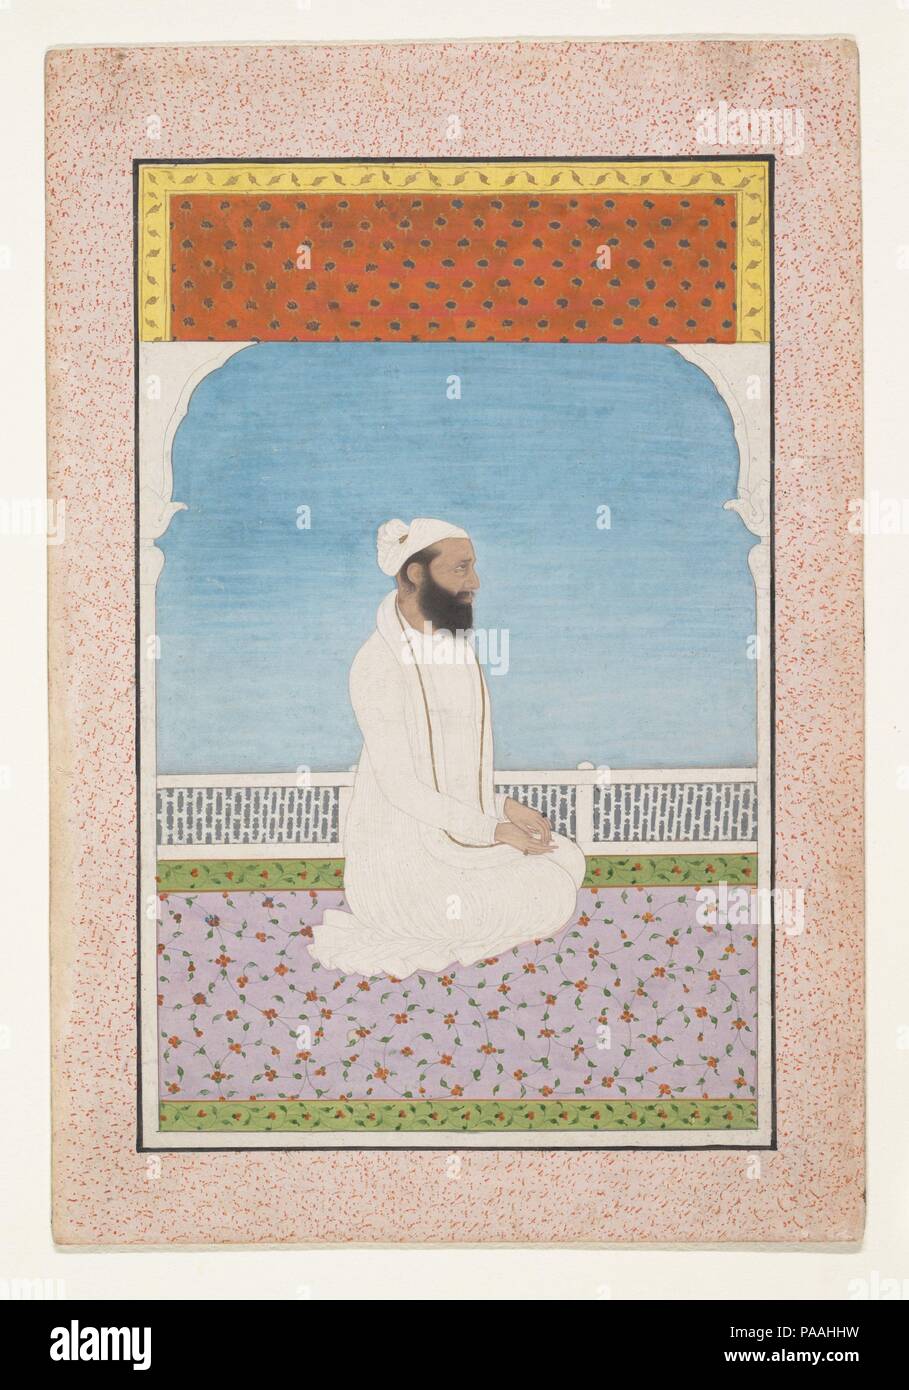 Un hombre santo sentados en una terraza. Cultura: India (Punjab Hills,  Kangra). Dimensiones: 6 1/2" x 4 1/4". (16,5 x 10,8 cm). Fecha: ca. 1850.  El artista ha utilizado magistralmente el escaso